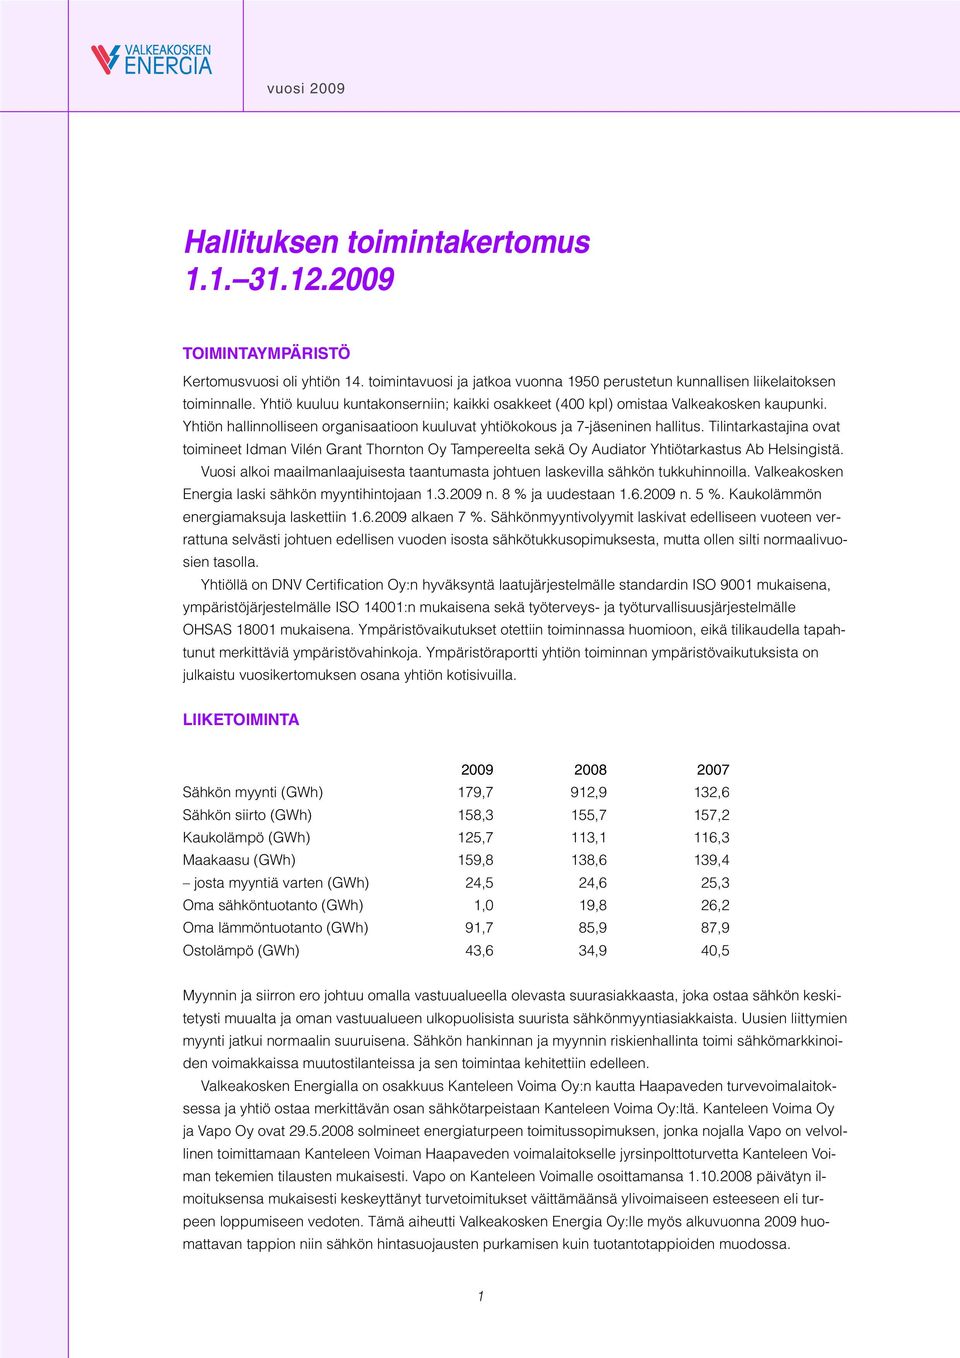 Tilintarkastajina ovat toimineet Idman Vilén Grant Thornton Oy Tampereelta sekä Oy Audiator Yhtiötarkastus Ab Helsingistä.